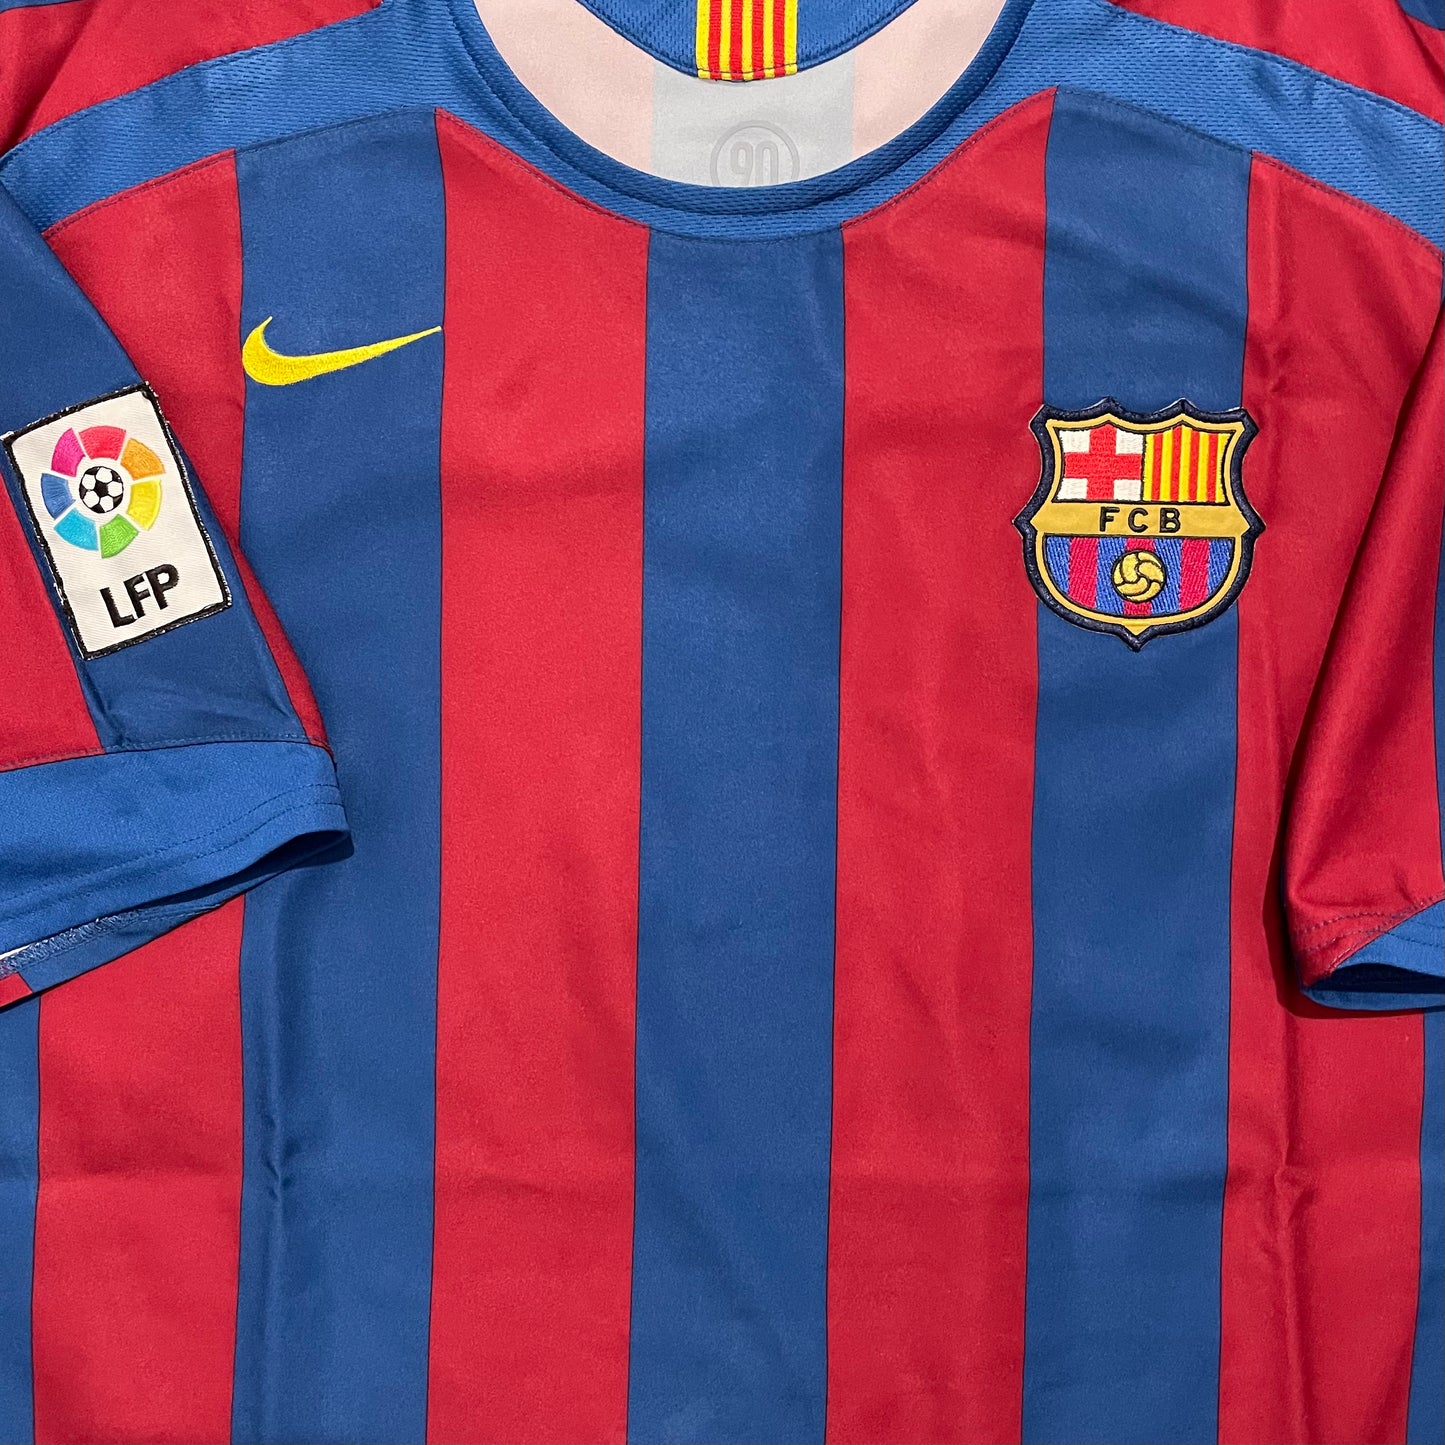 2005-2006 FC Barcelona home shirt #10 Ronaldinho (XL)